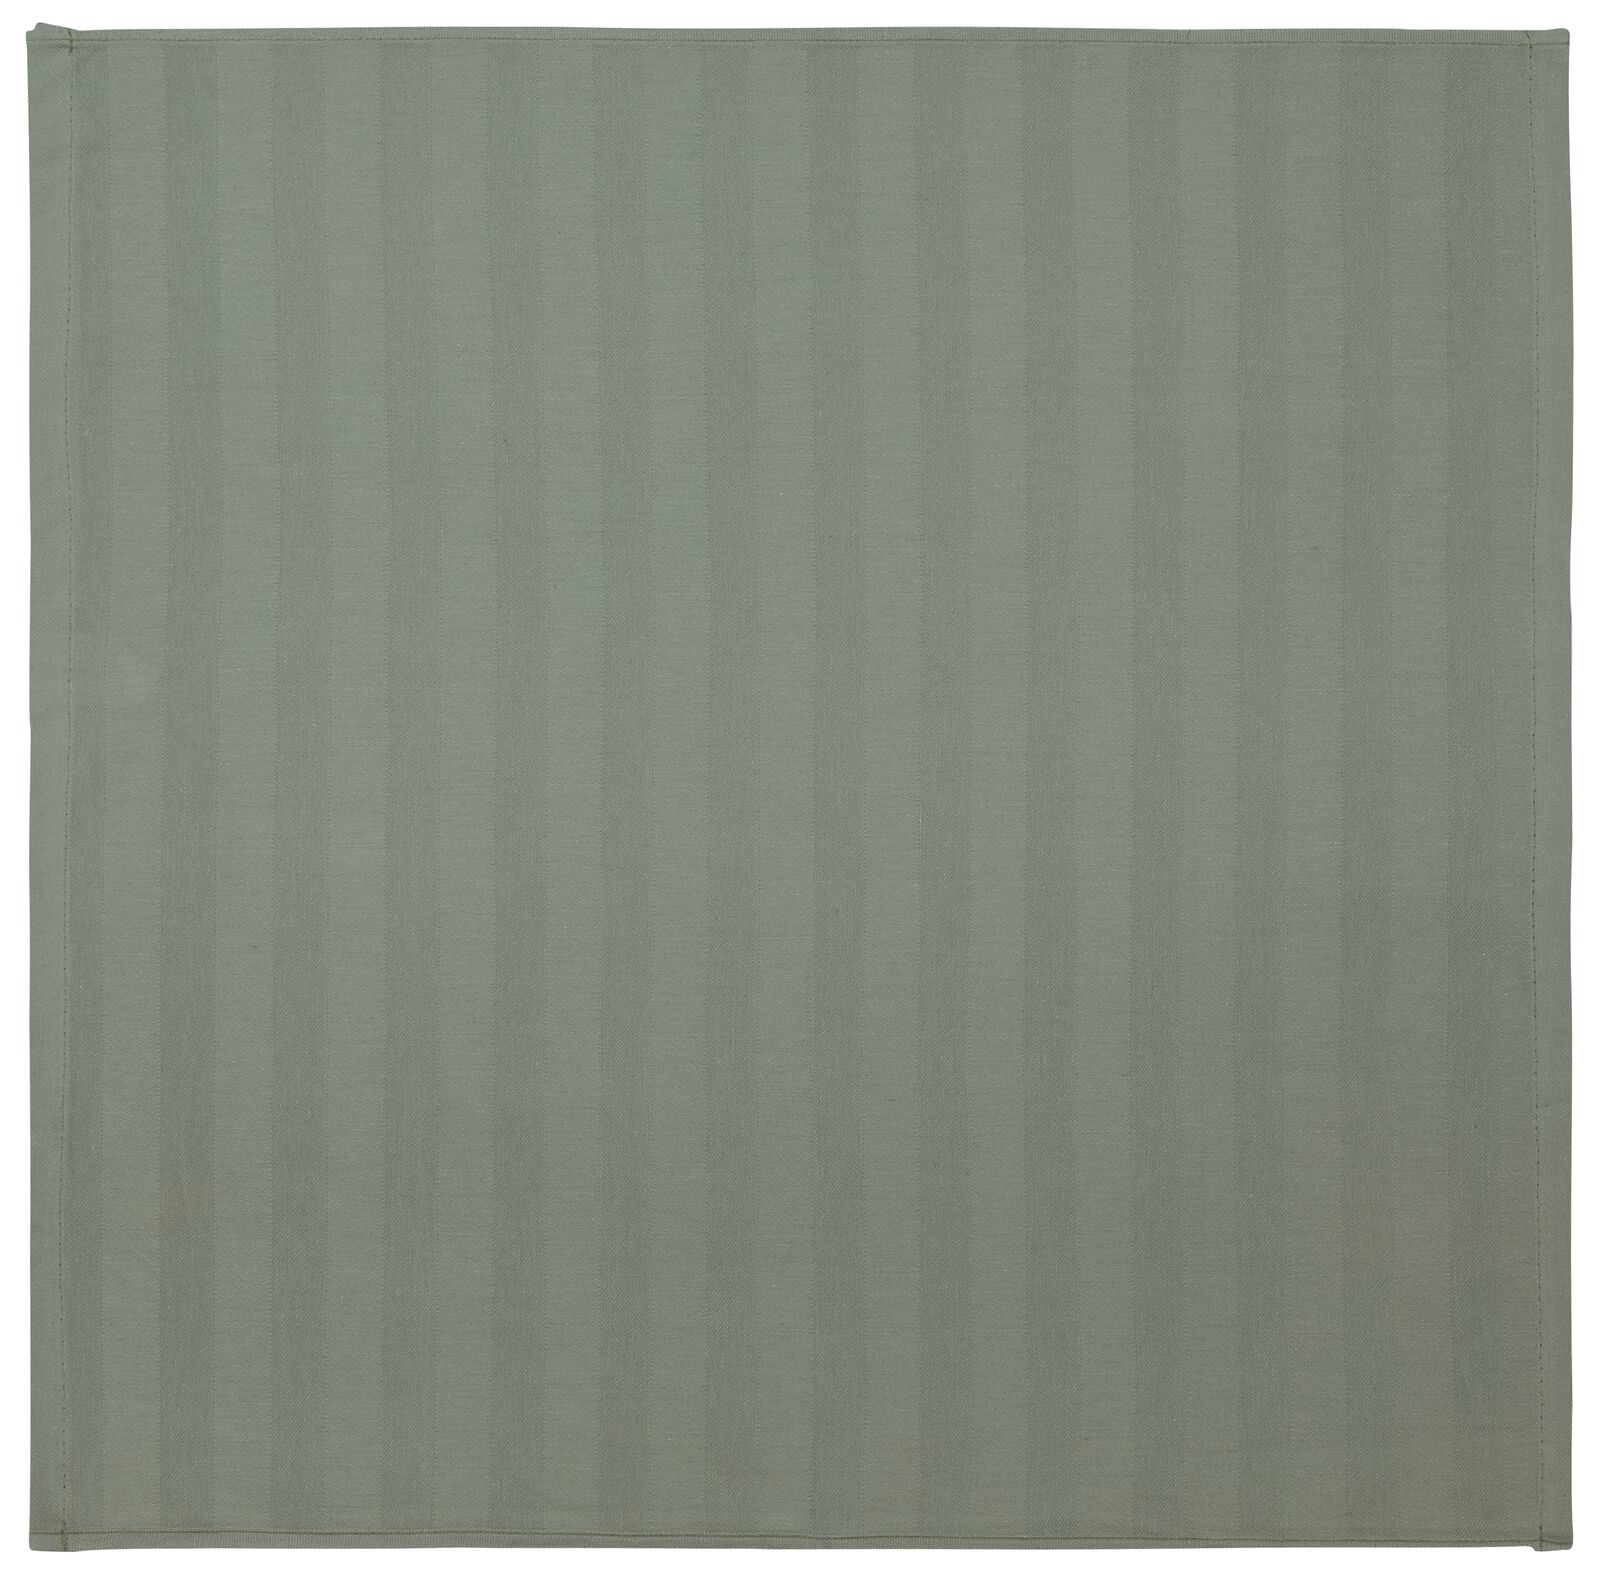 Geschirrtuch, 65 x 65 cm, Baumwolle, graugrün - 5420079 - HEMA